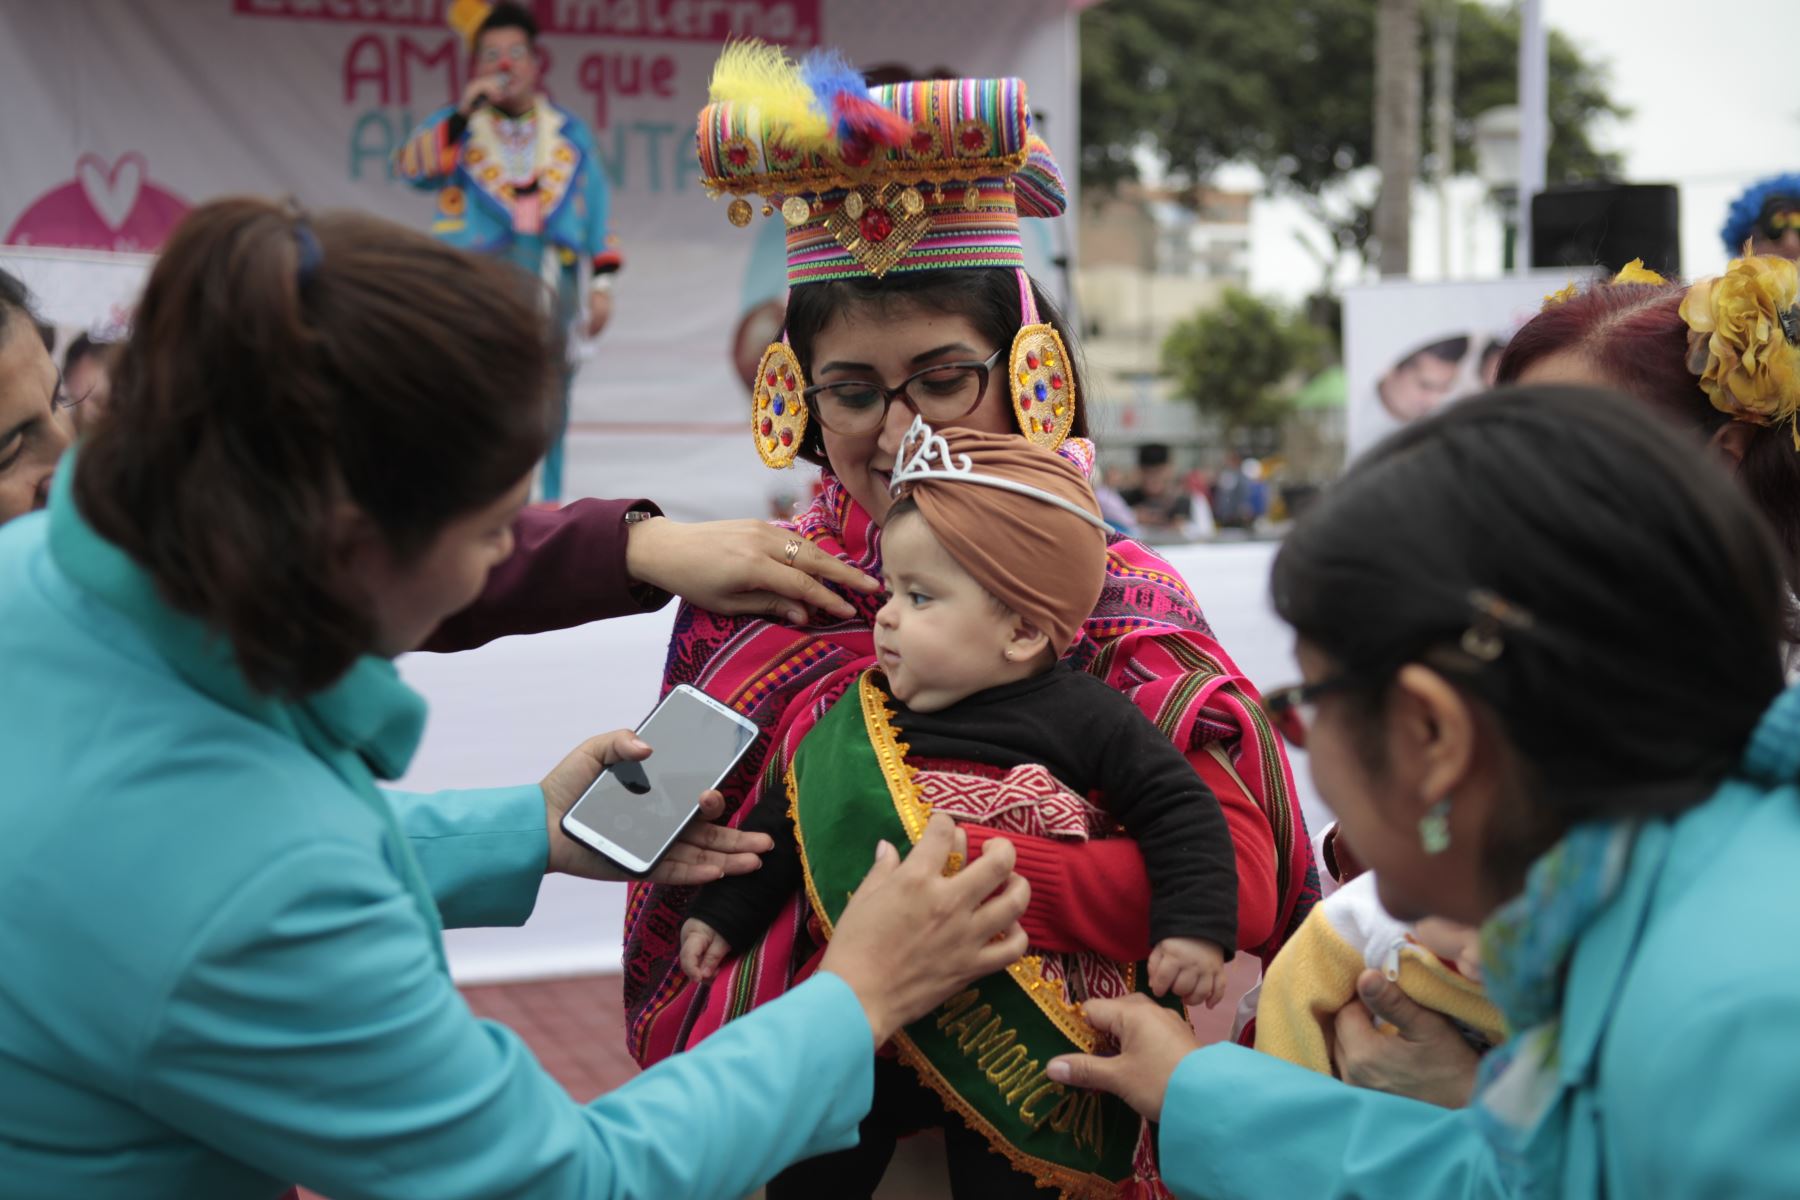 Feria de cuidados preventivos, en el marco de la Semana de la Lactancia Materna en el parque Tupac Amaru del distrito de Magdalena del Mar.
Foto: ANDINA/Miguel Mejía Castro